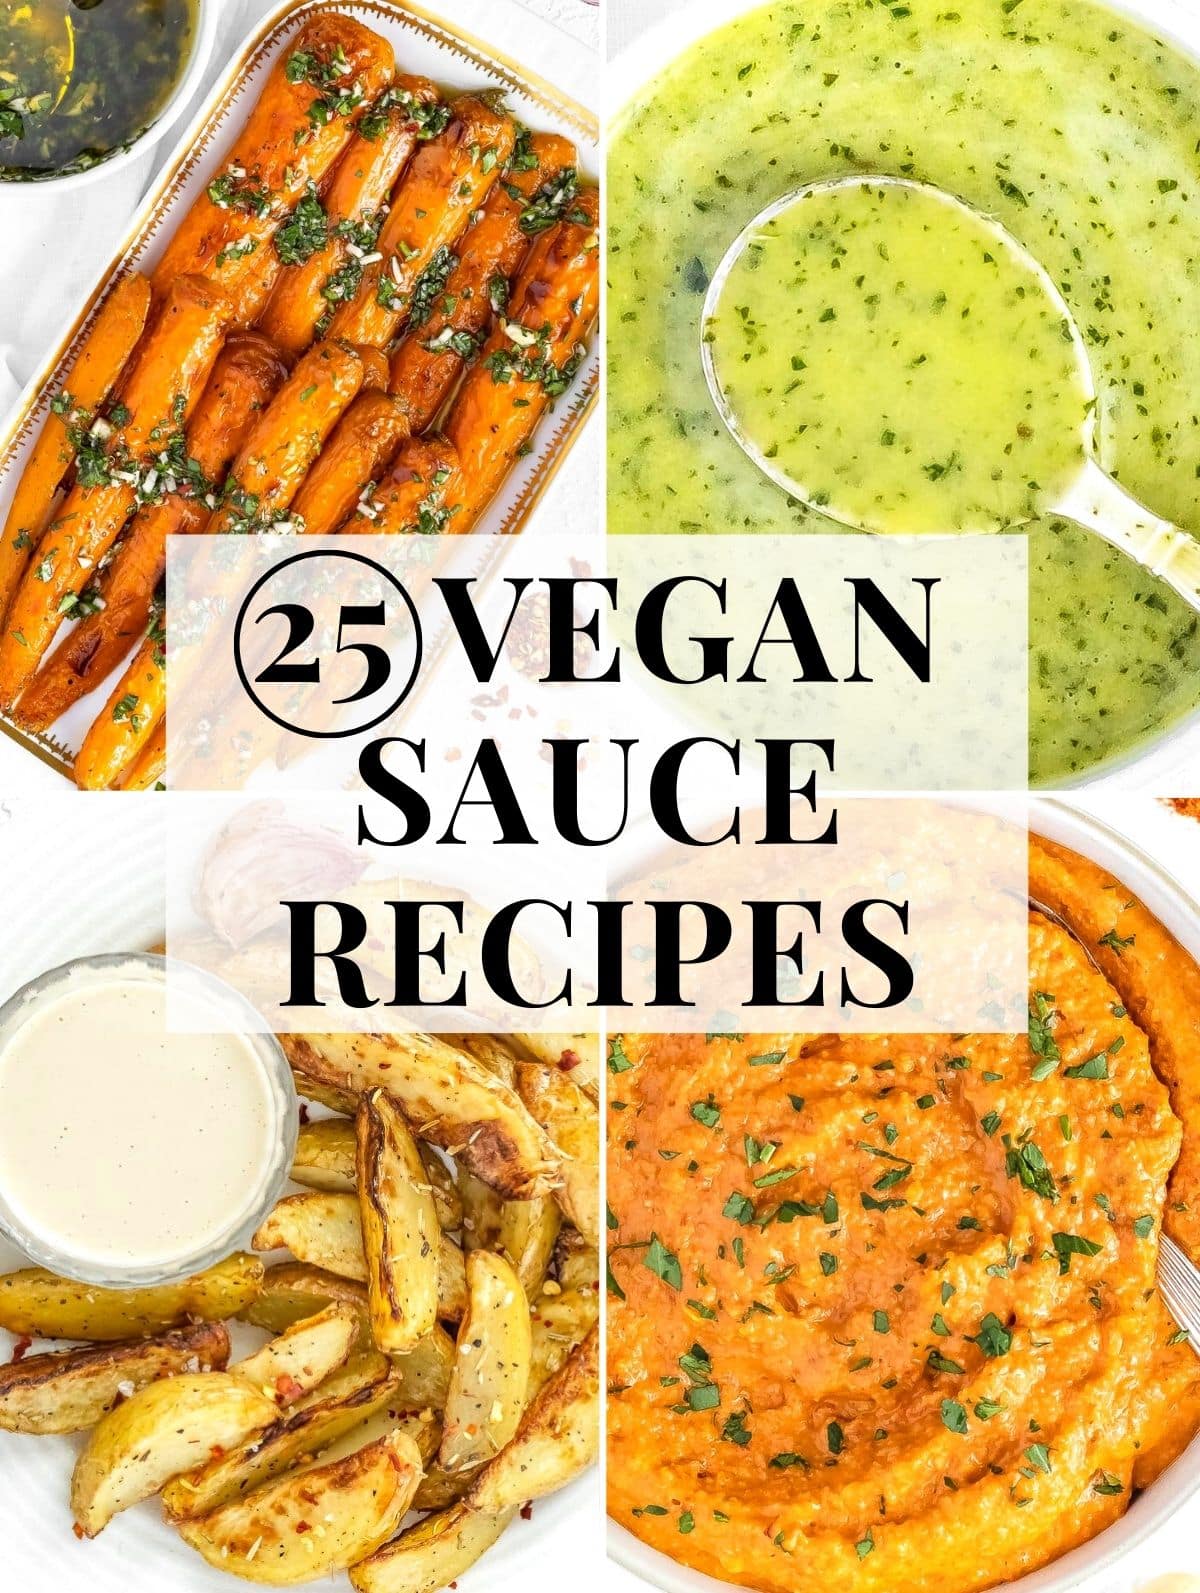 vegan sauces for pasta, veggies and salads